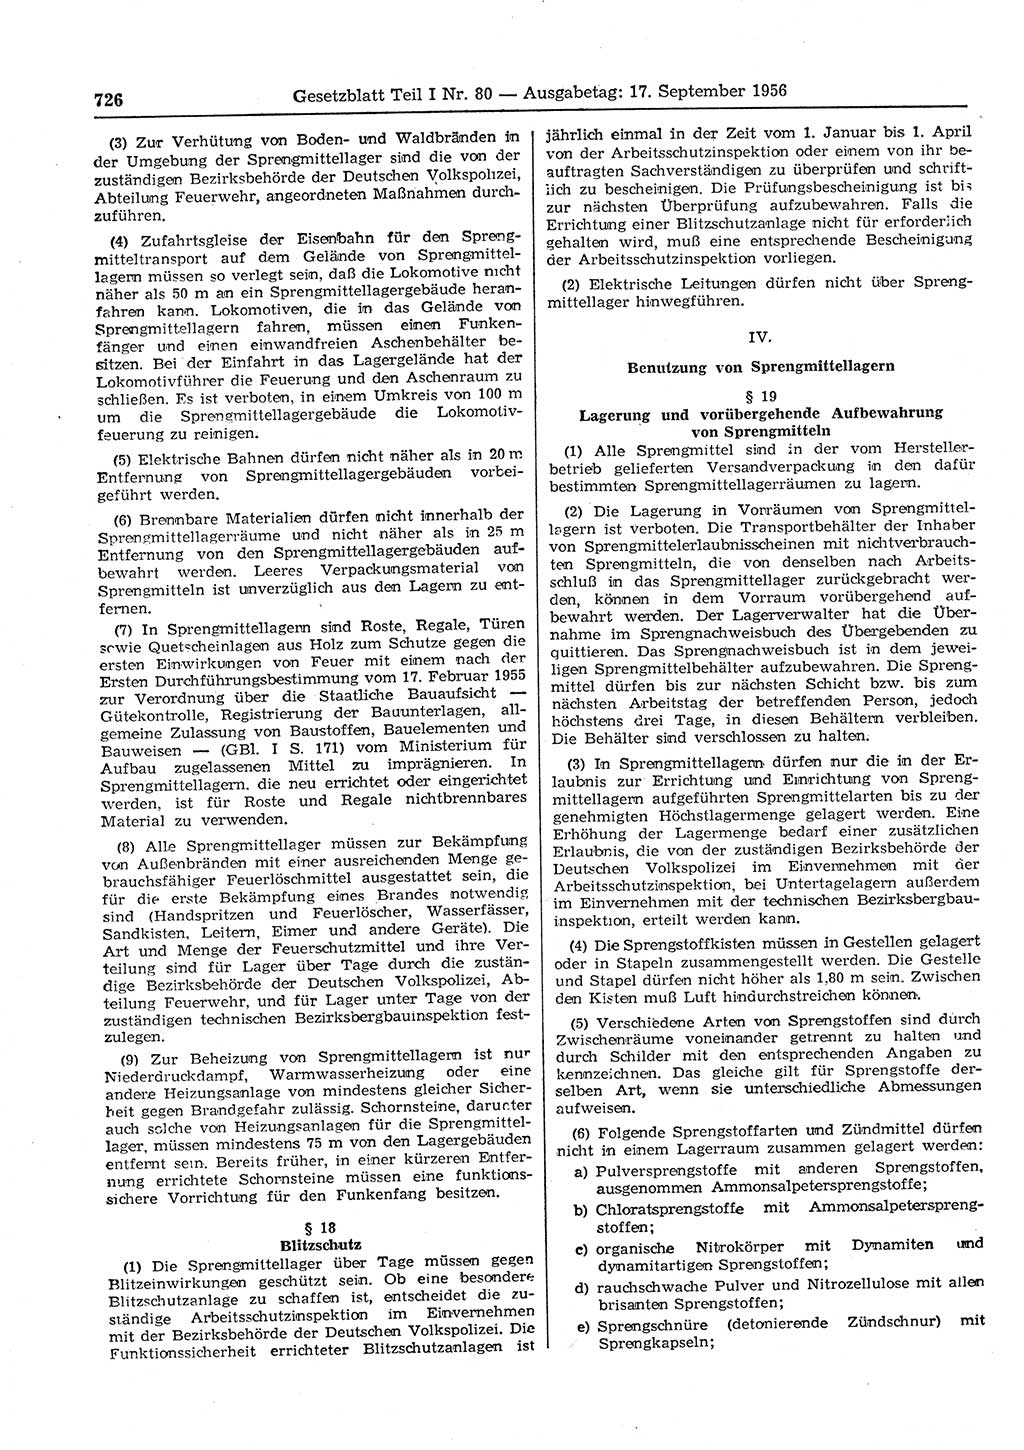 Gesetzblatt (GBl.) der Deutschen Demokratischen Republik (DDR) Teil Ⅰ 1956, Seite 726 (GBl. DDR Ⅰ 1956, S. 726)